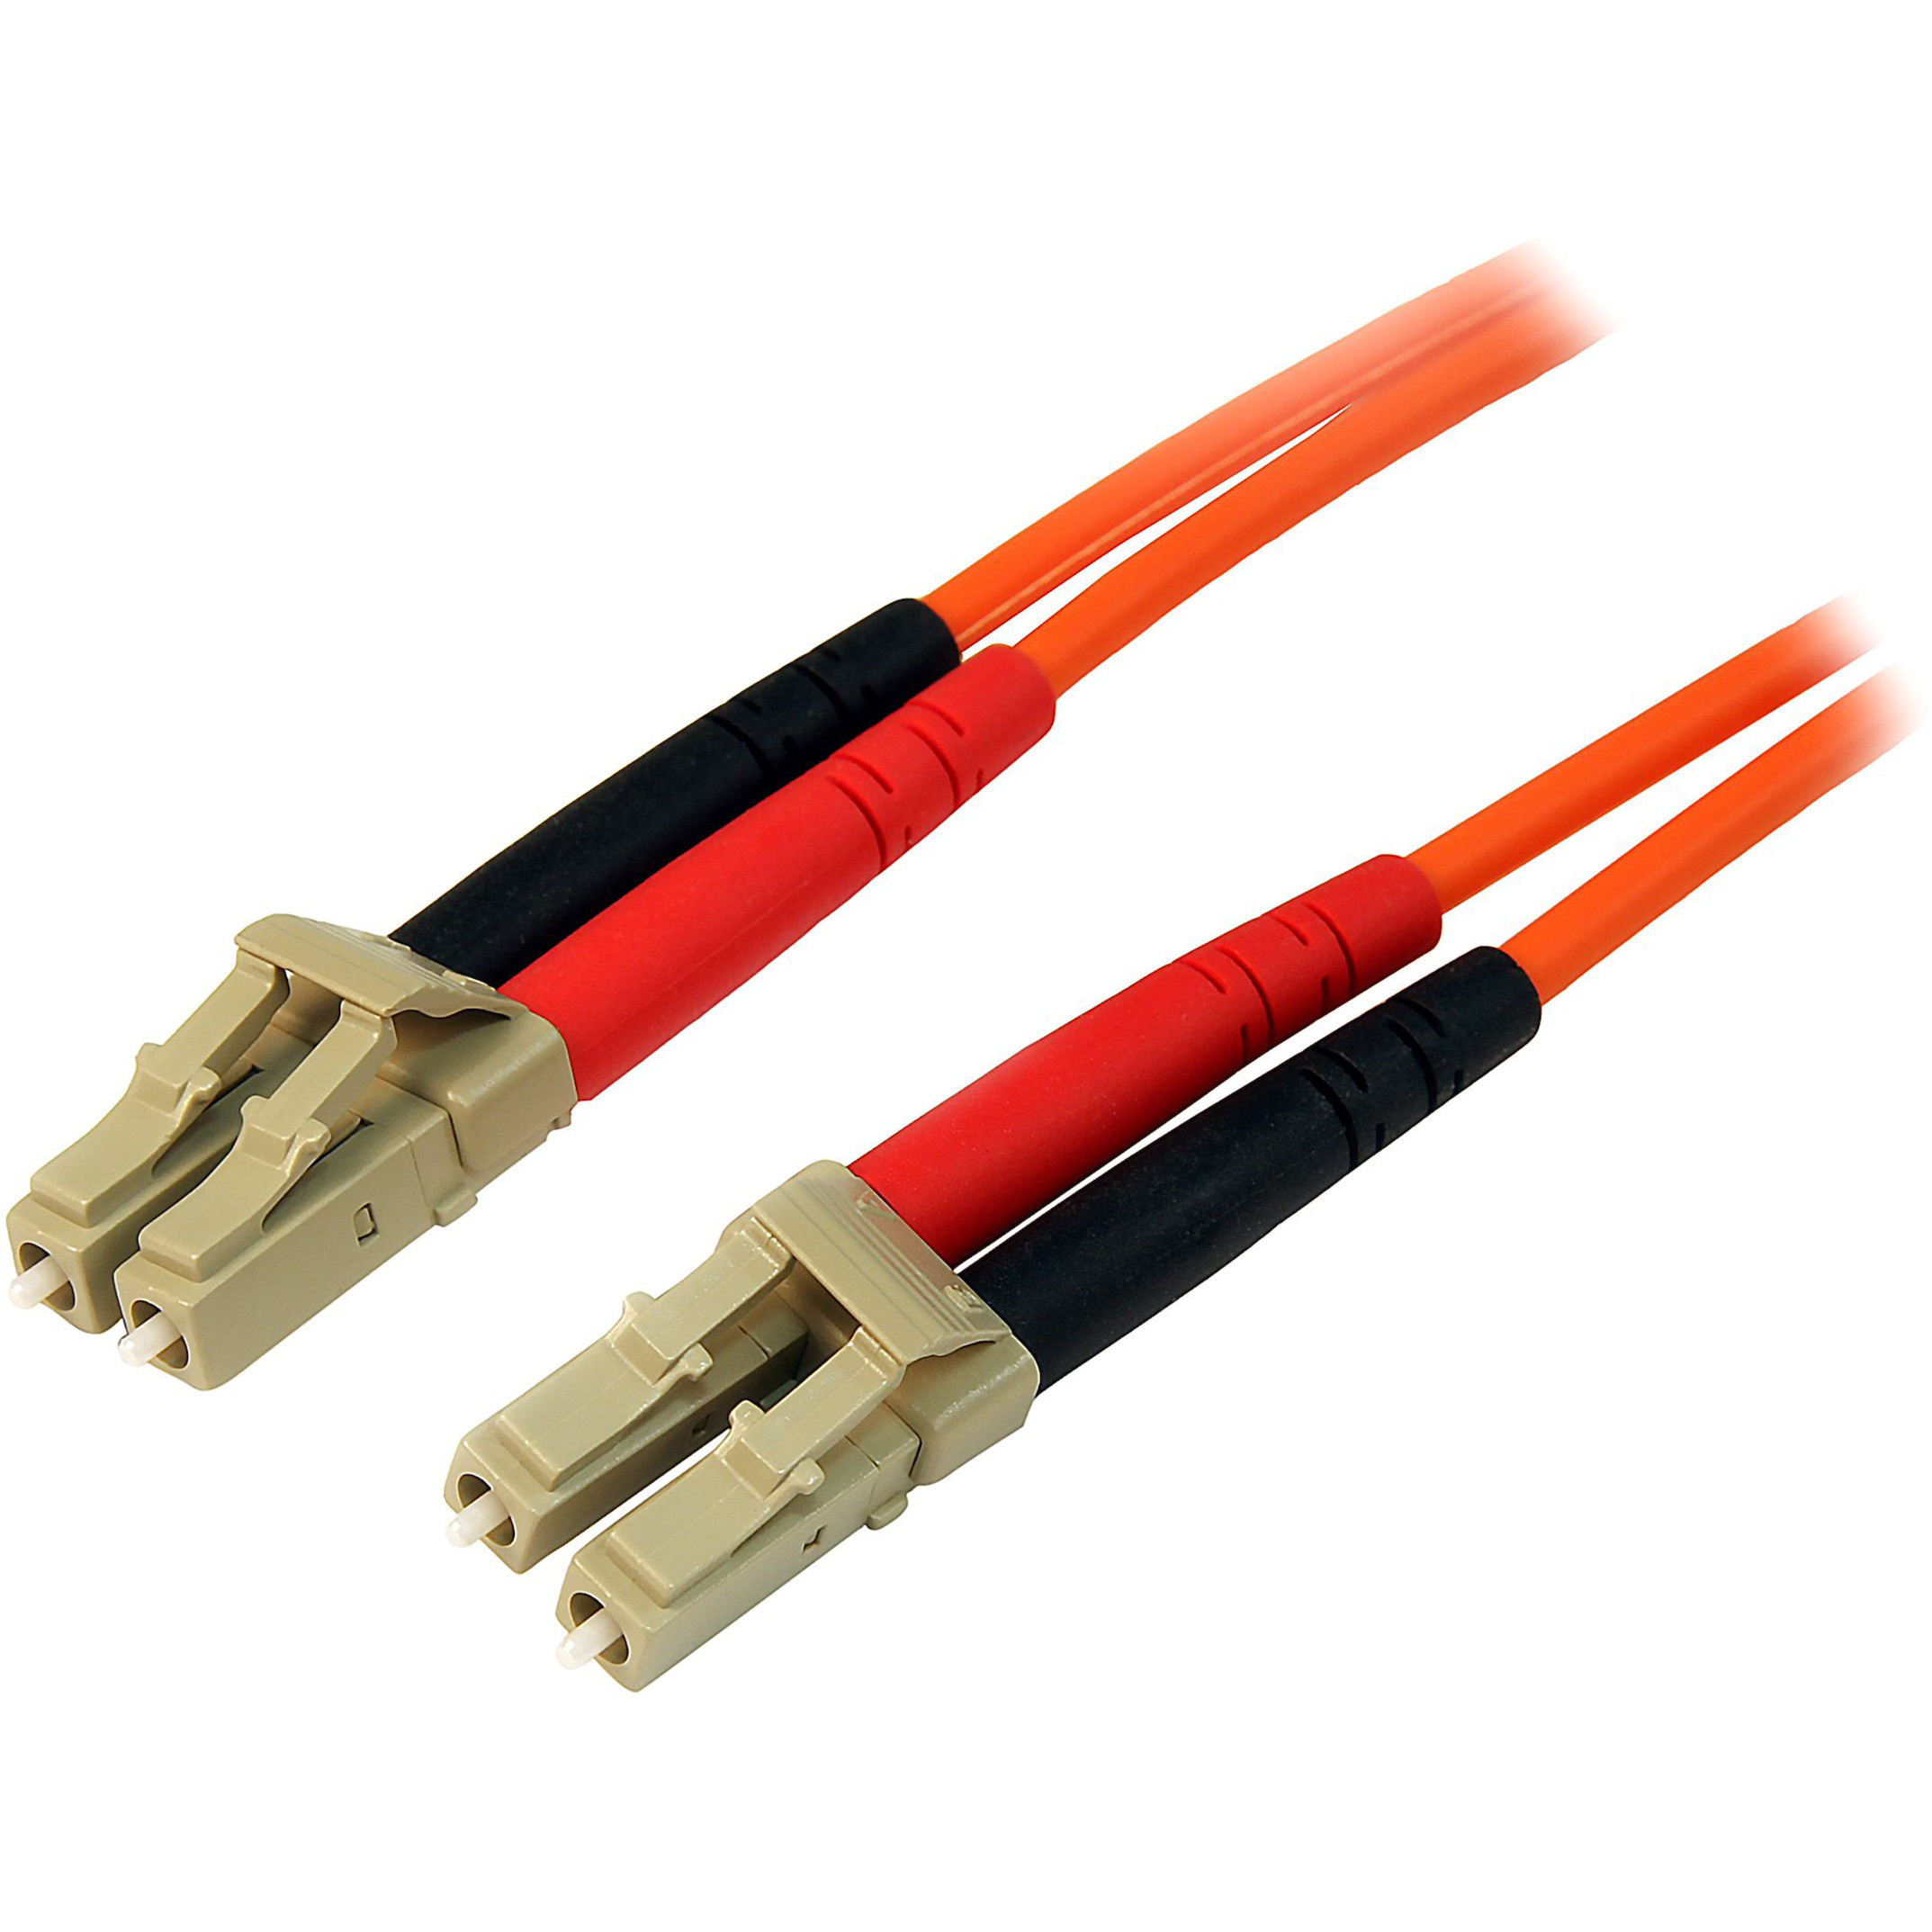 Startech .com 3m Fiber Optic CableMultimode Duplex 50/125LSZHLC/LCOM2LC to LC Fiber Patch CableConnect fiber network devices… 50FIBLCLC3